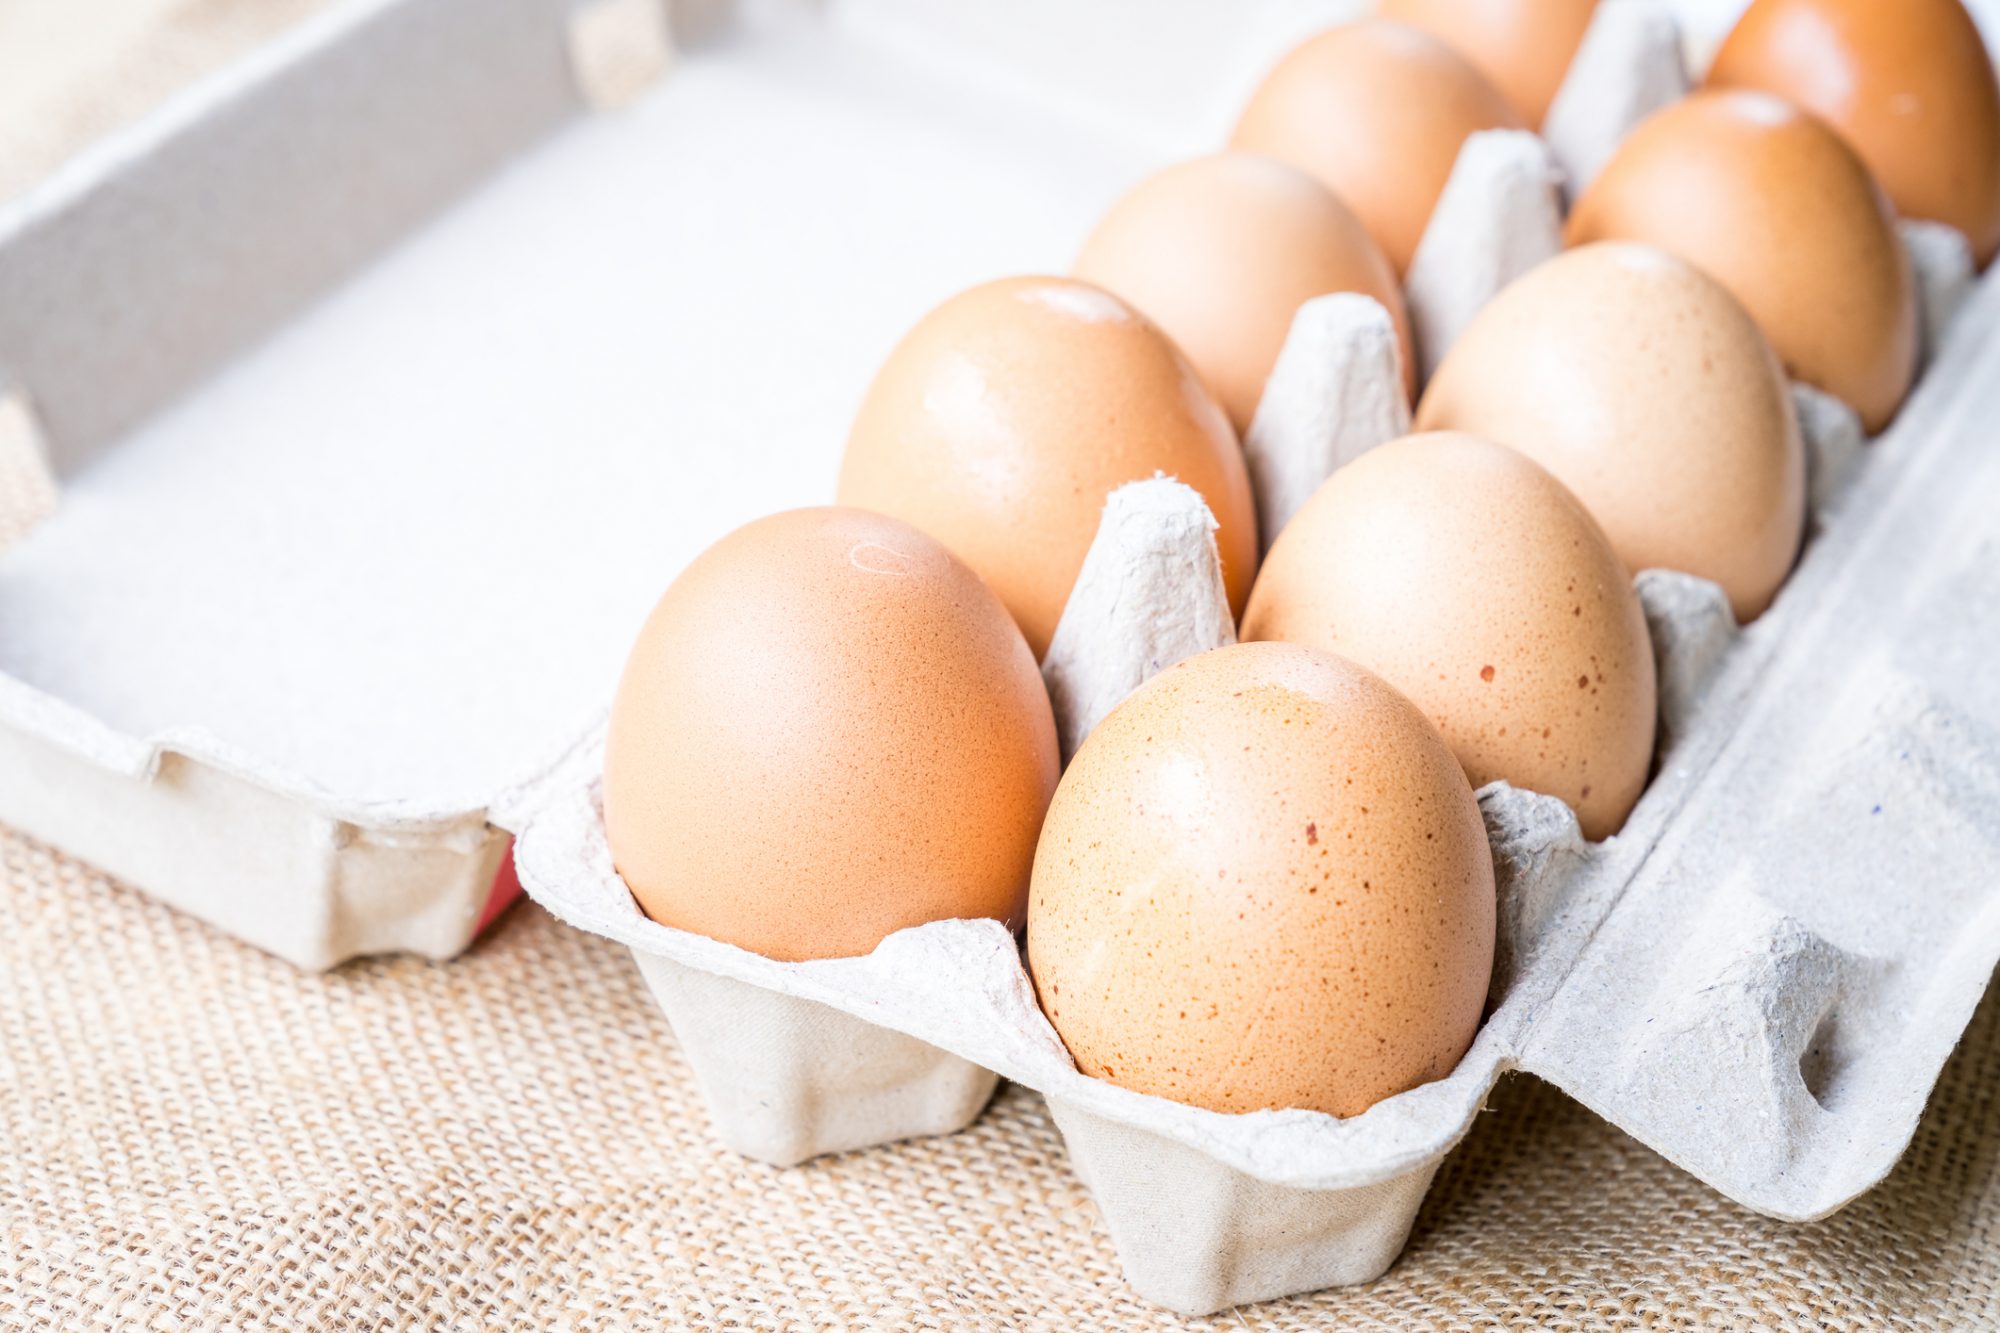 trứng giảm cân Vừa giàu collagen còn vừa giúp giảm cân, bảo sao Hà Tăng, Hà Trúc đều cực mê món bình dân này - Ảnh 5.